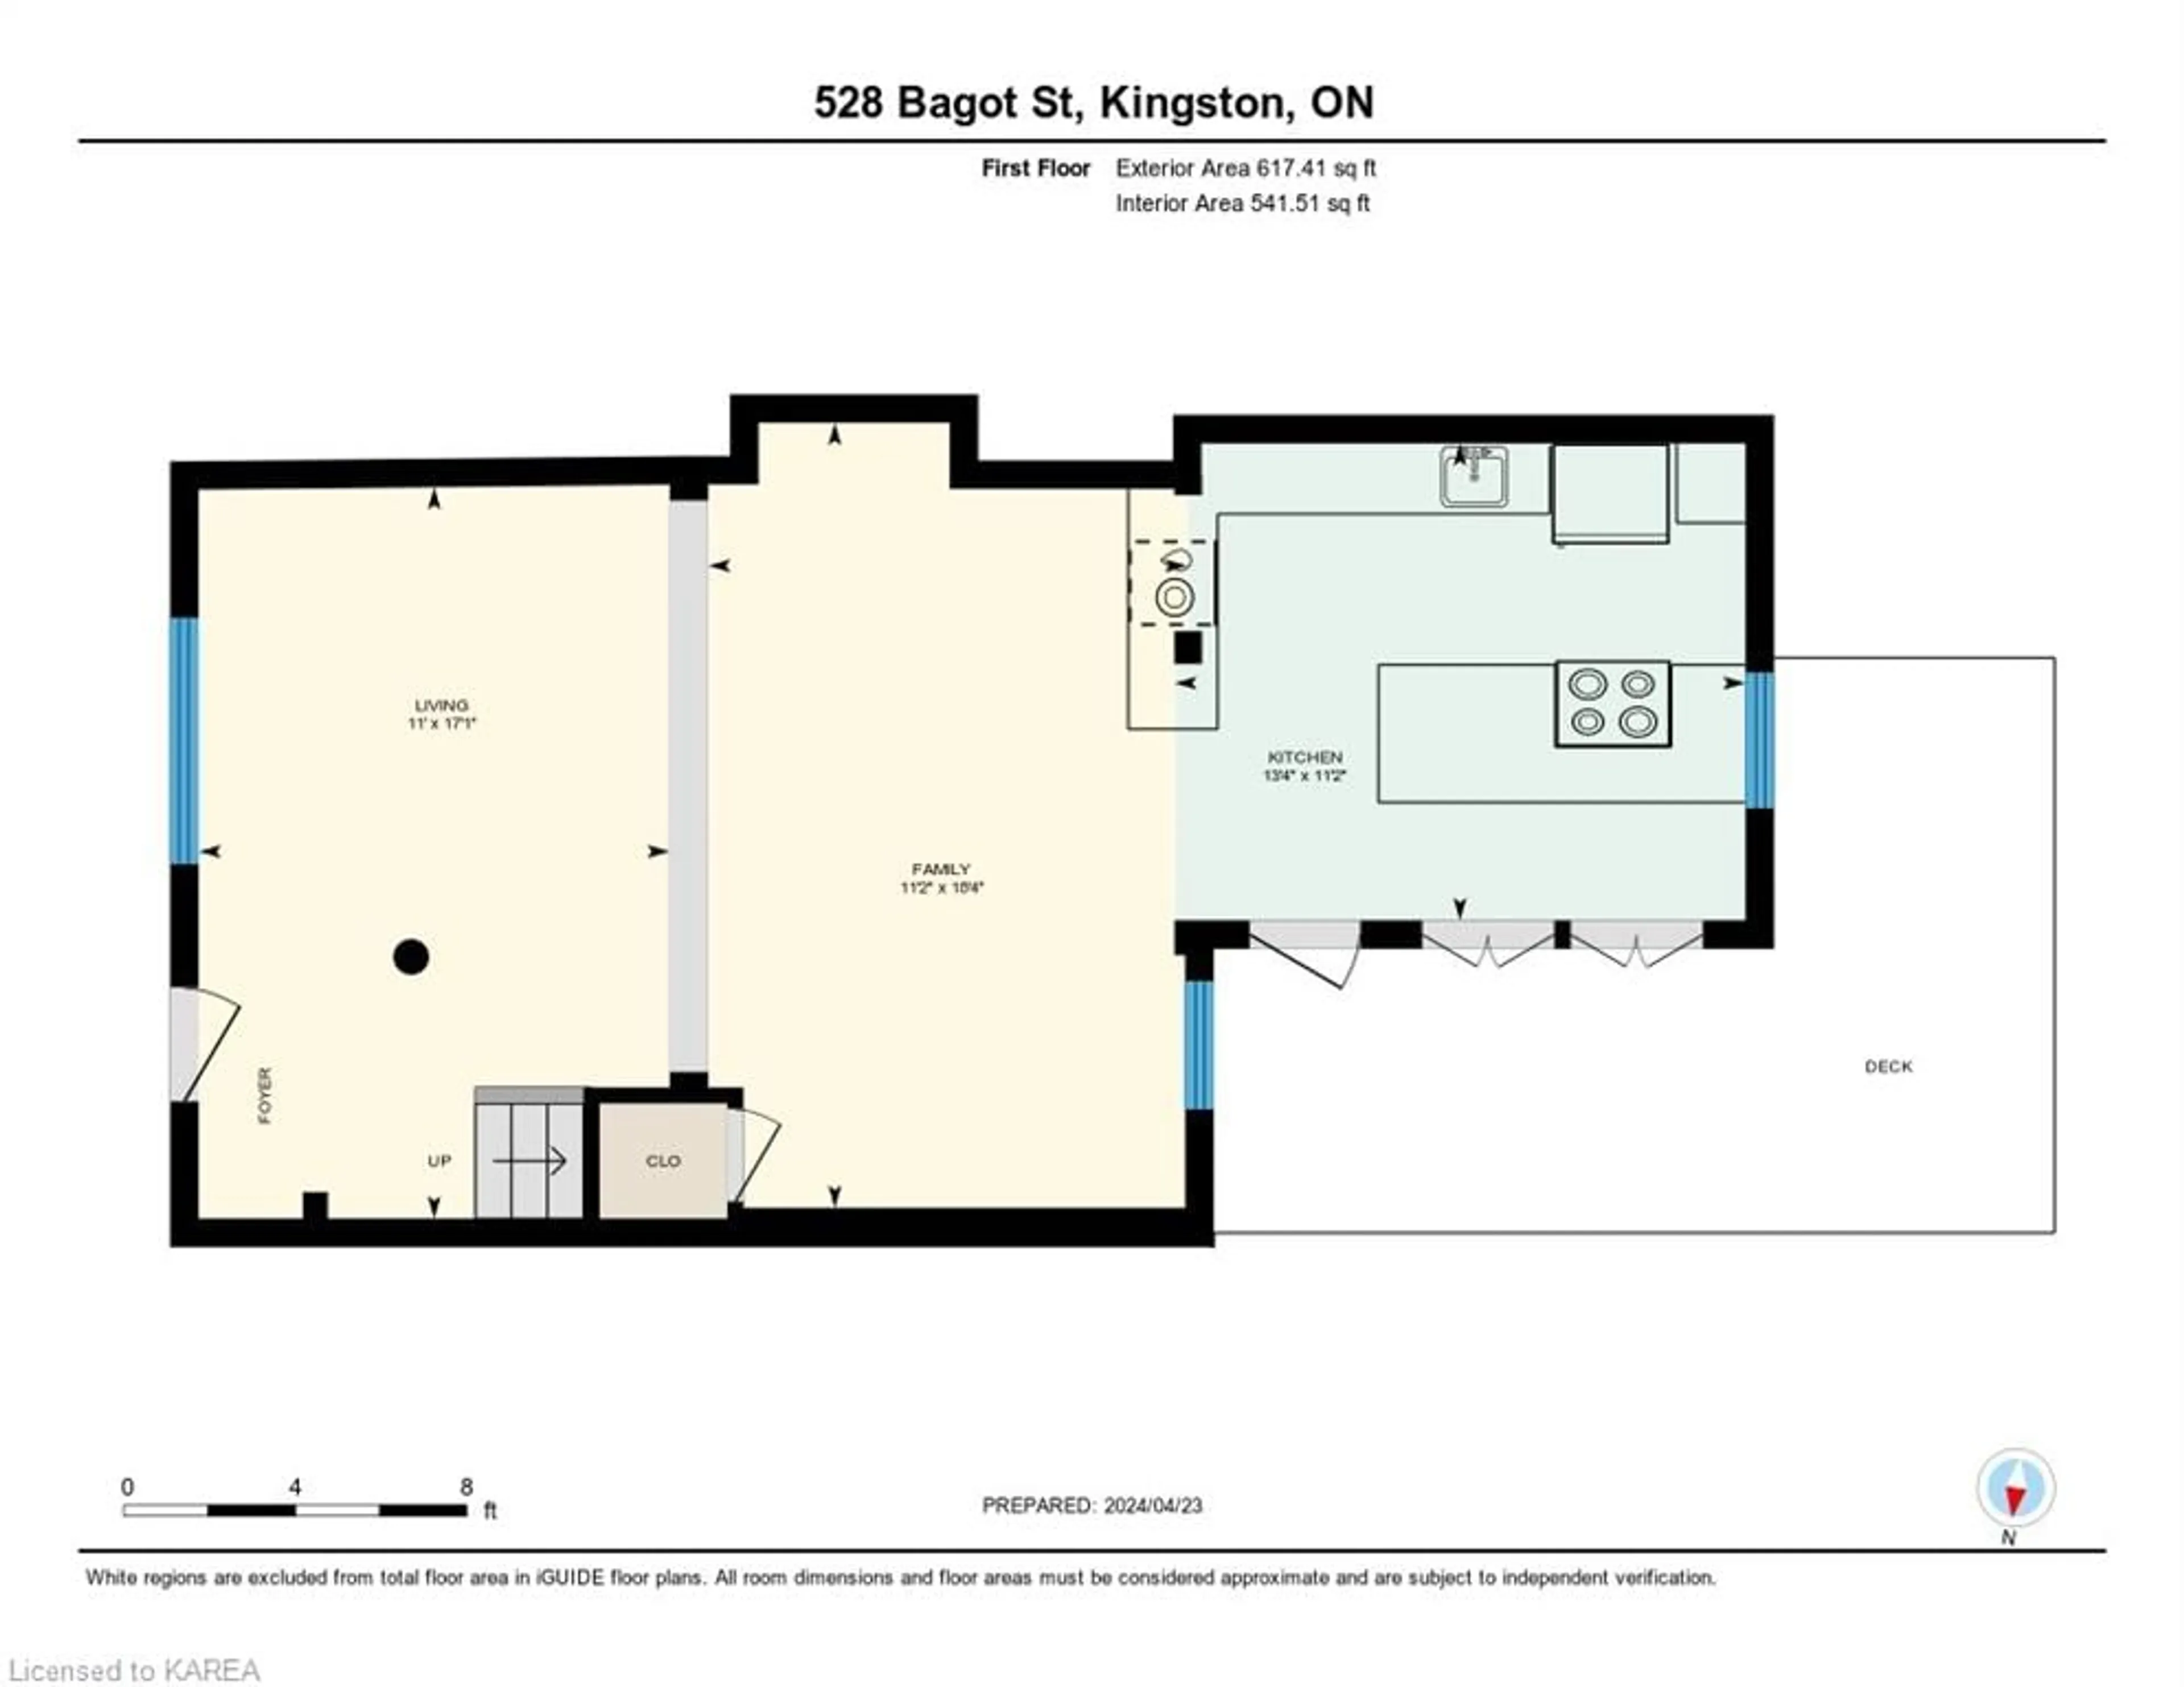 Floor plan for 528 Bagot St, Kingston Ontario K7K 3C9